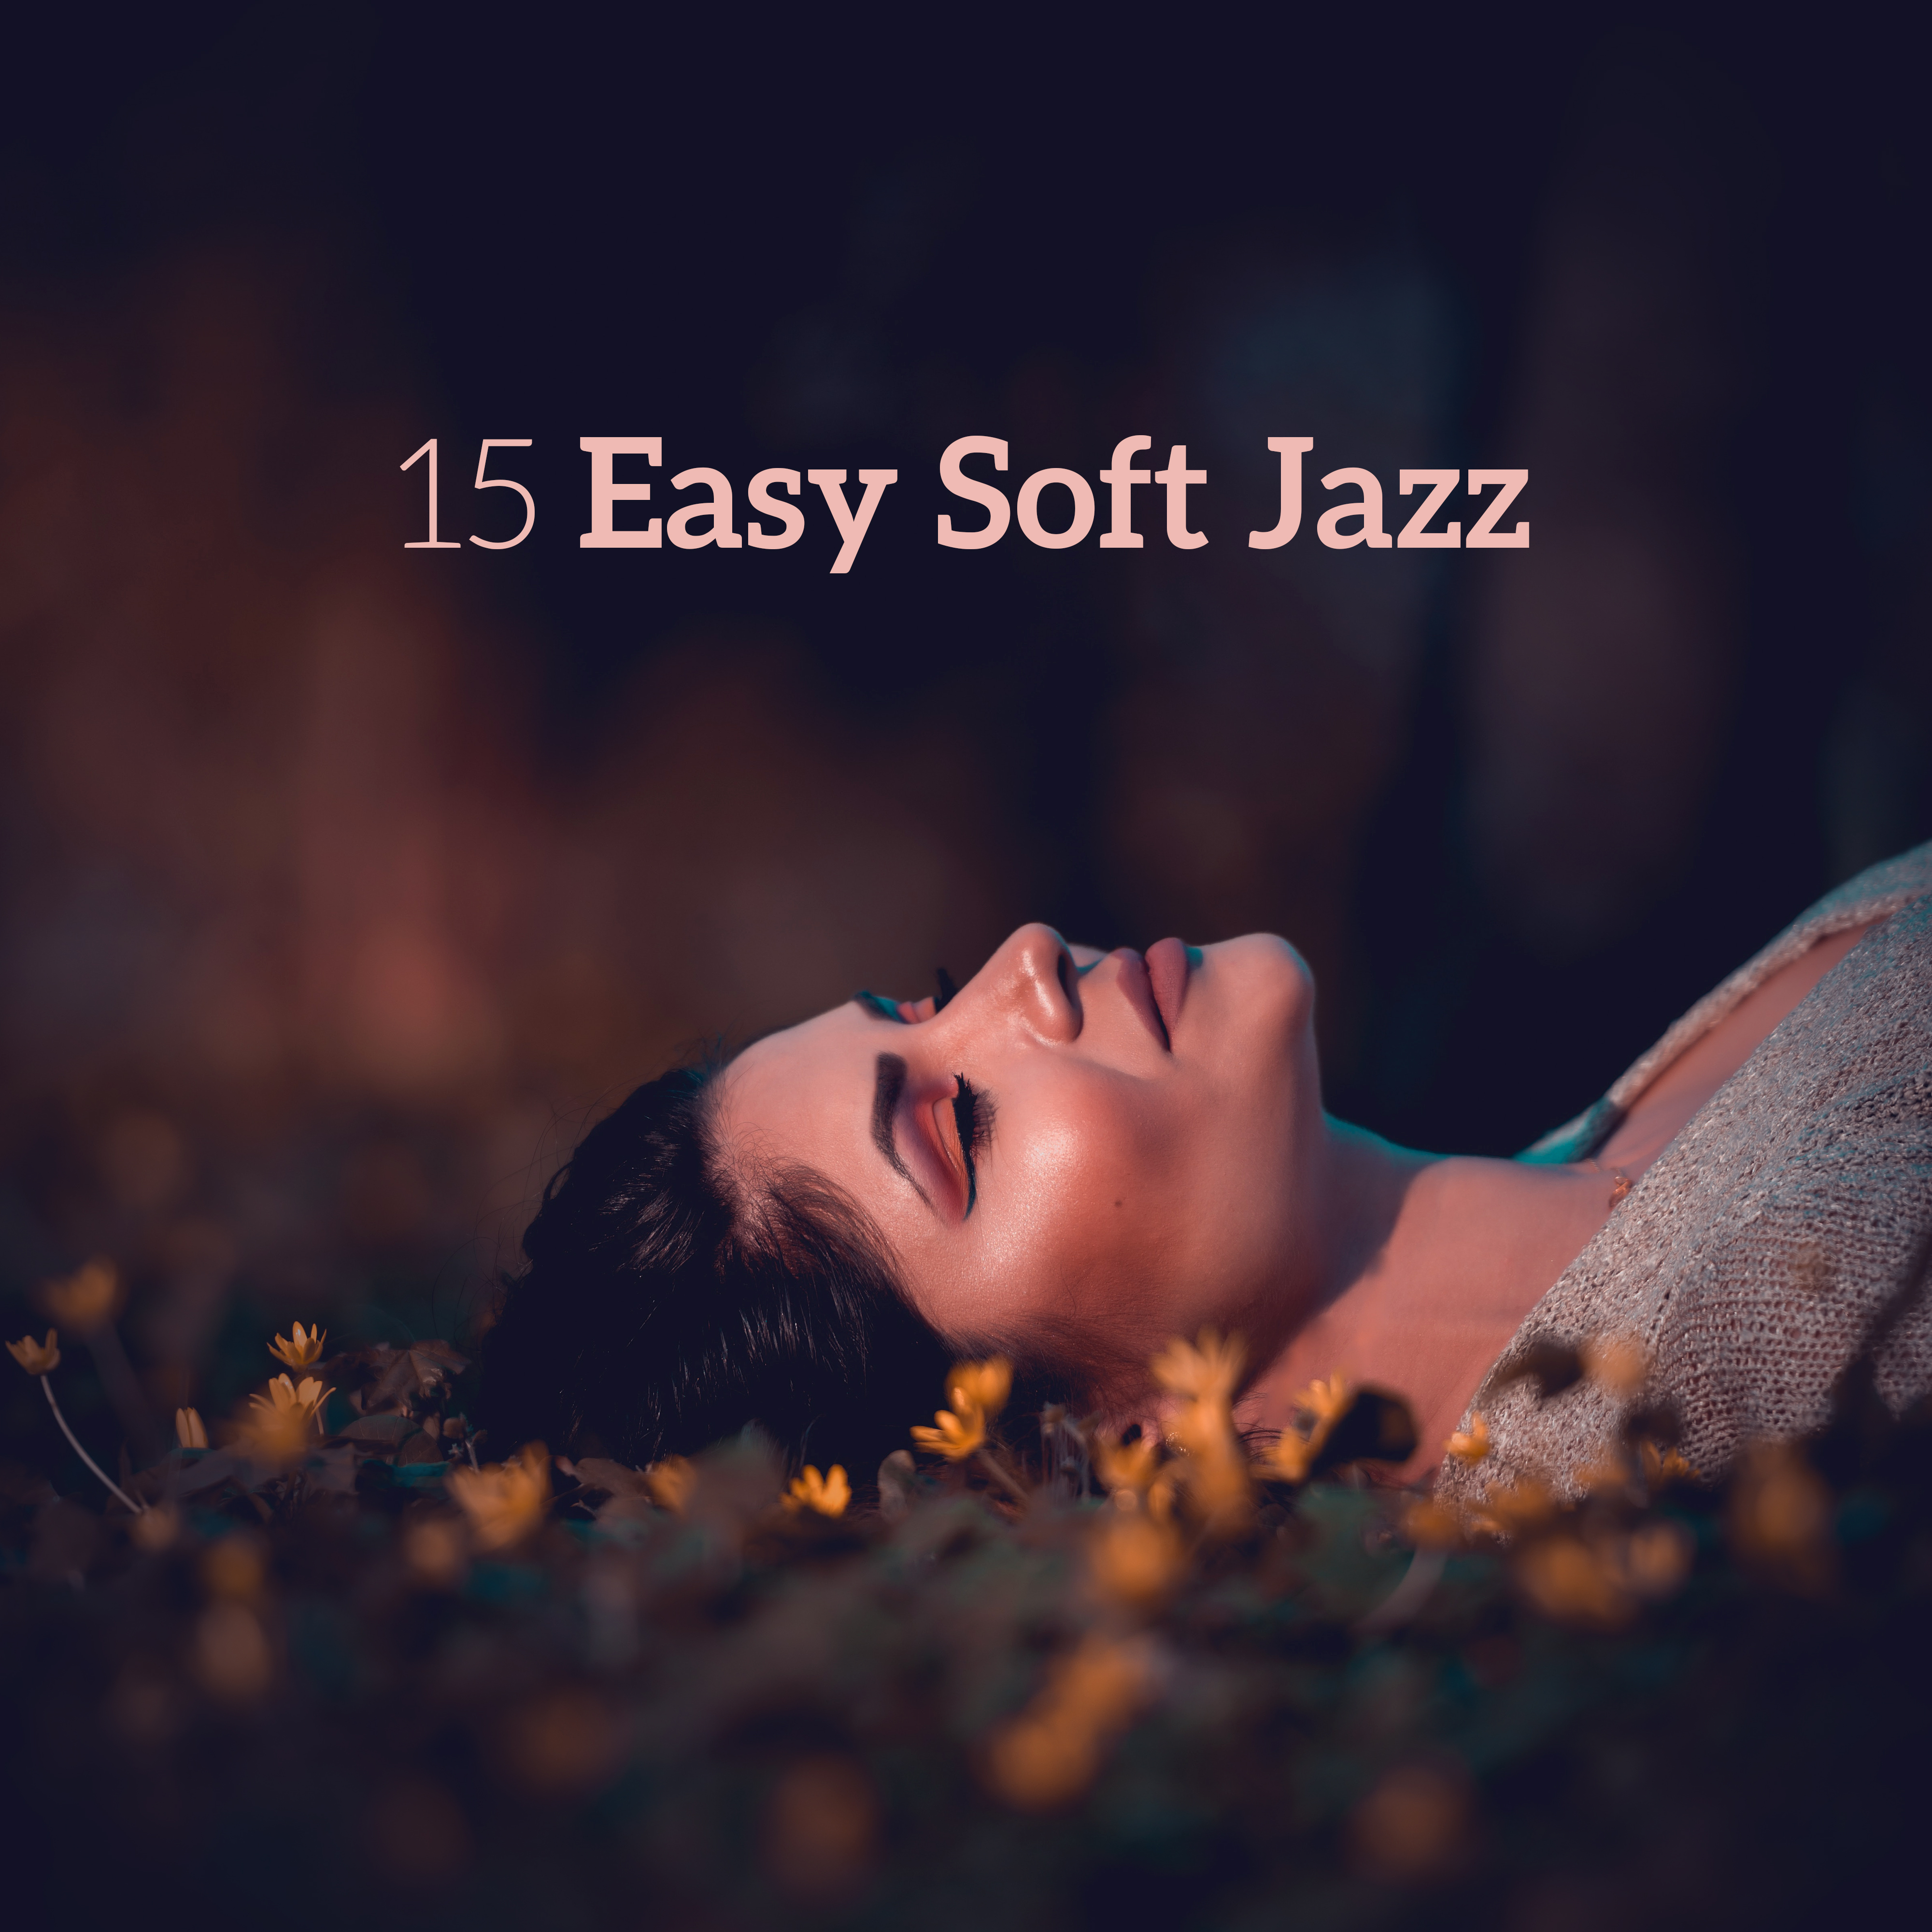 15 Easy Soft Jazz